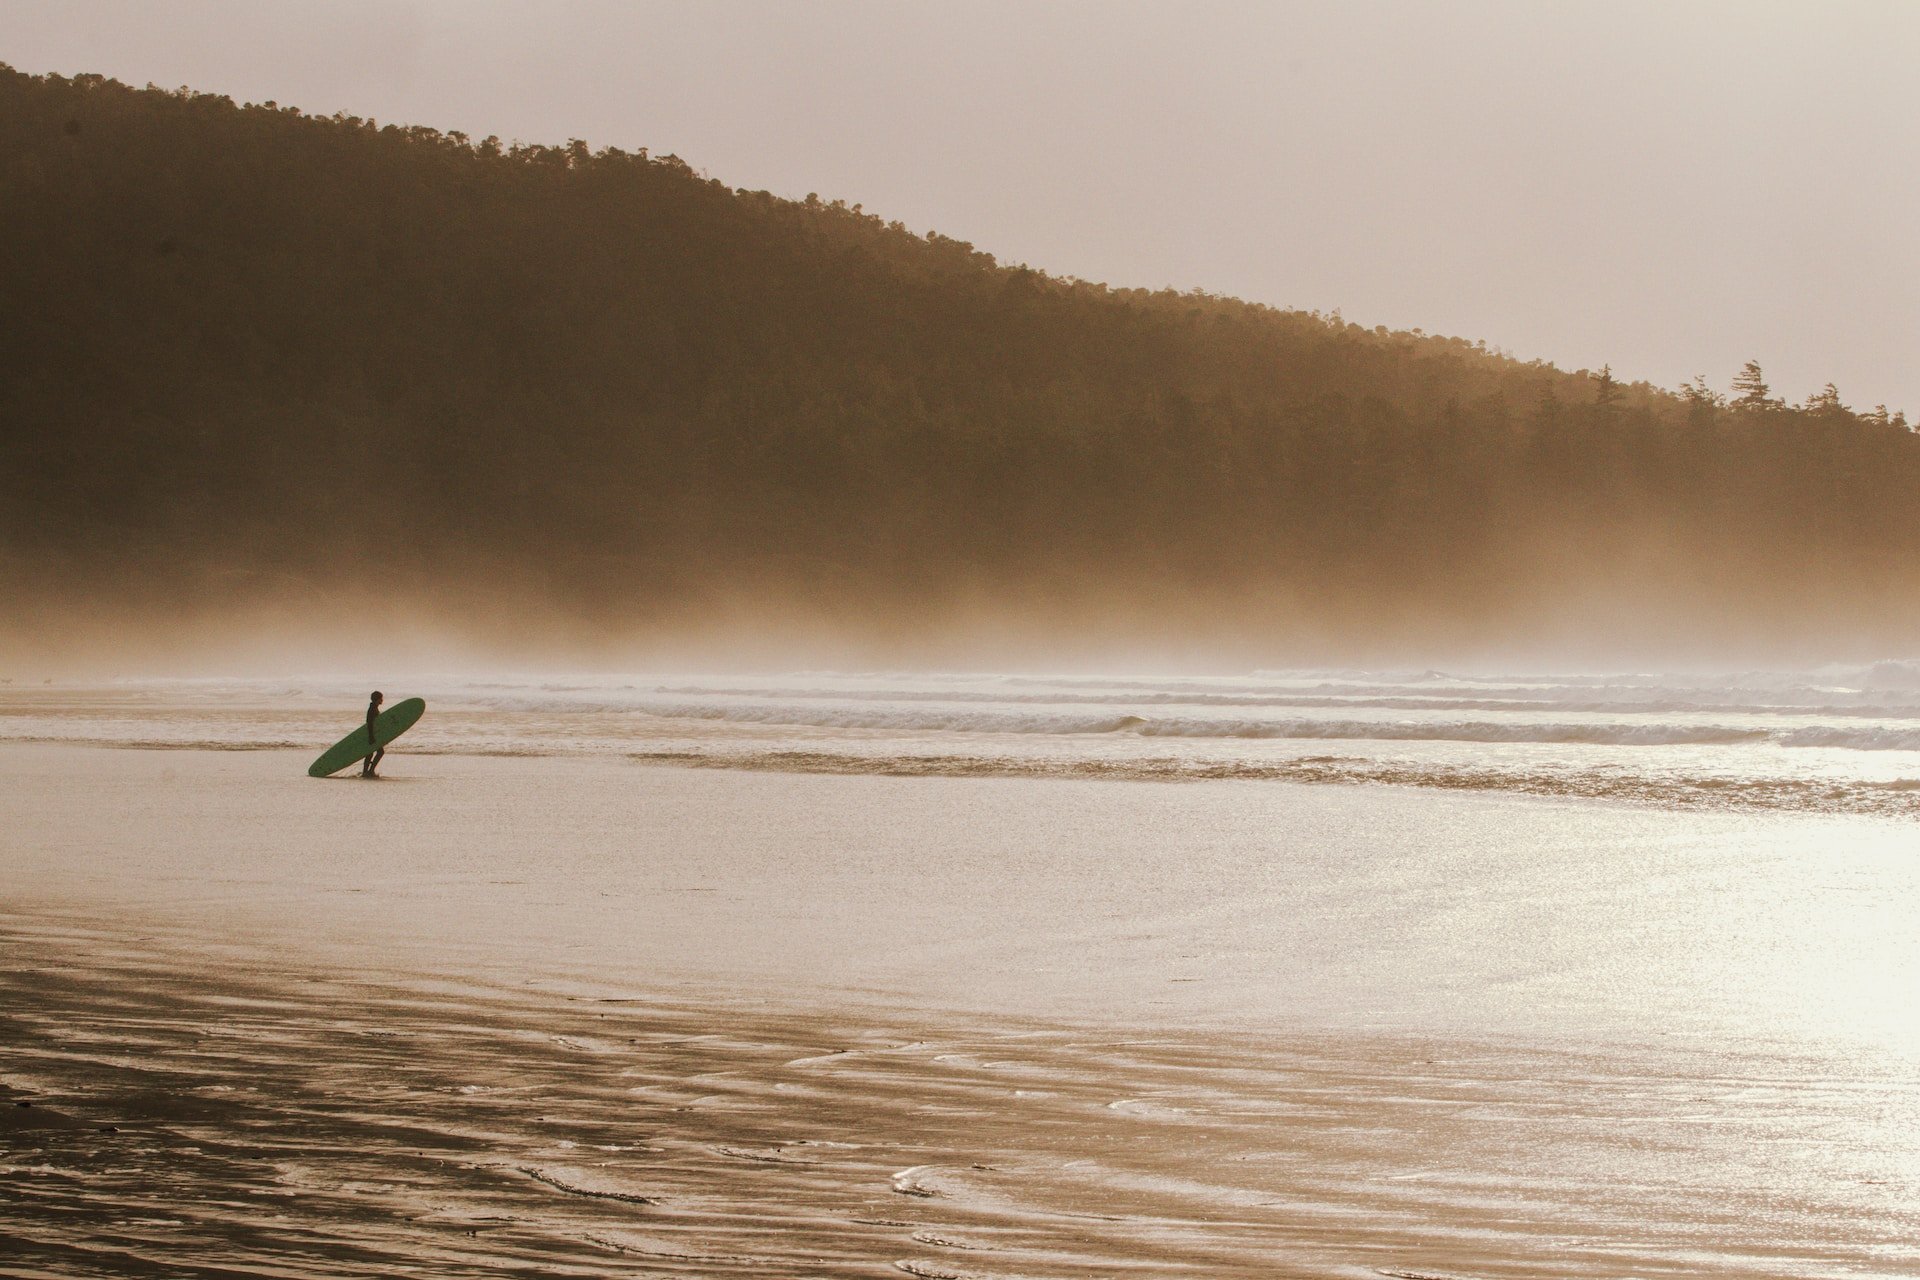 Surfer in Tofino (photo: Micah McKerlich)